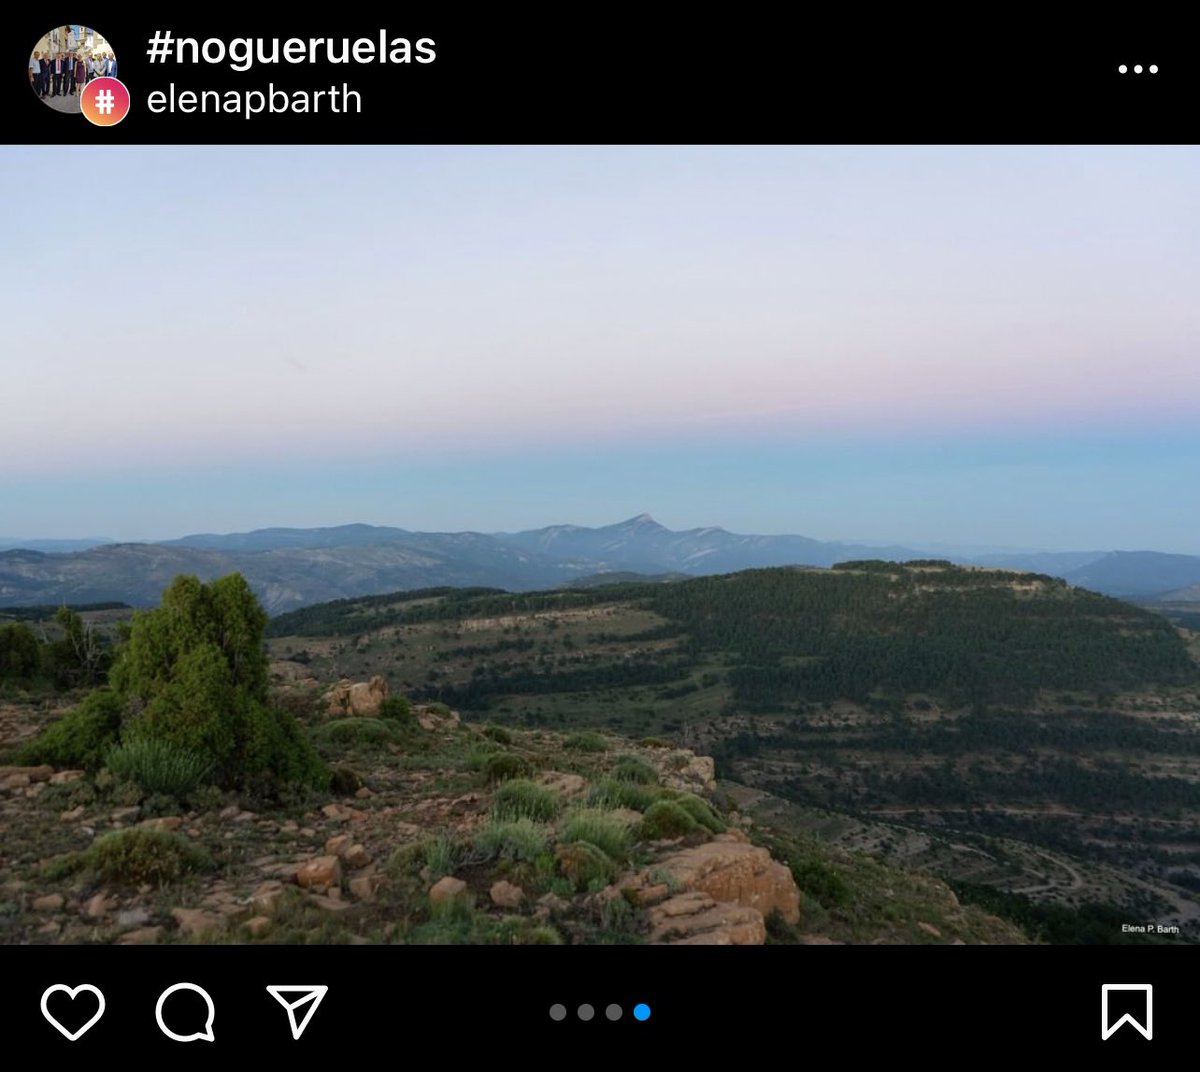 Cabezo de Las Cruces, fotos de Elena Palacios Barth, límite entre #Nogueruelas @linaresdemora y #CortesDeArenoso vía: instagram.com/p/CQ8Q22RLPMK/…